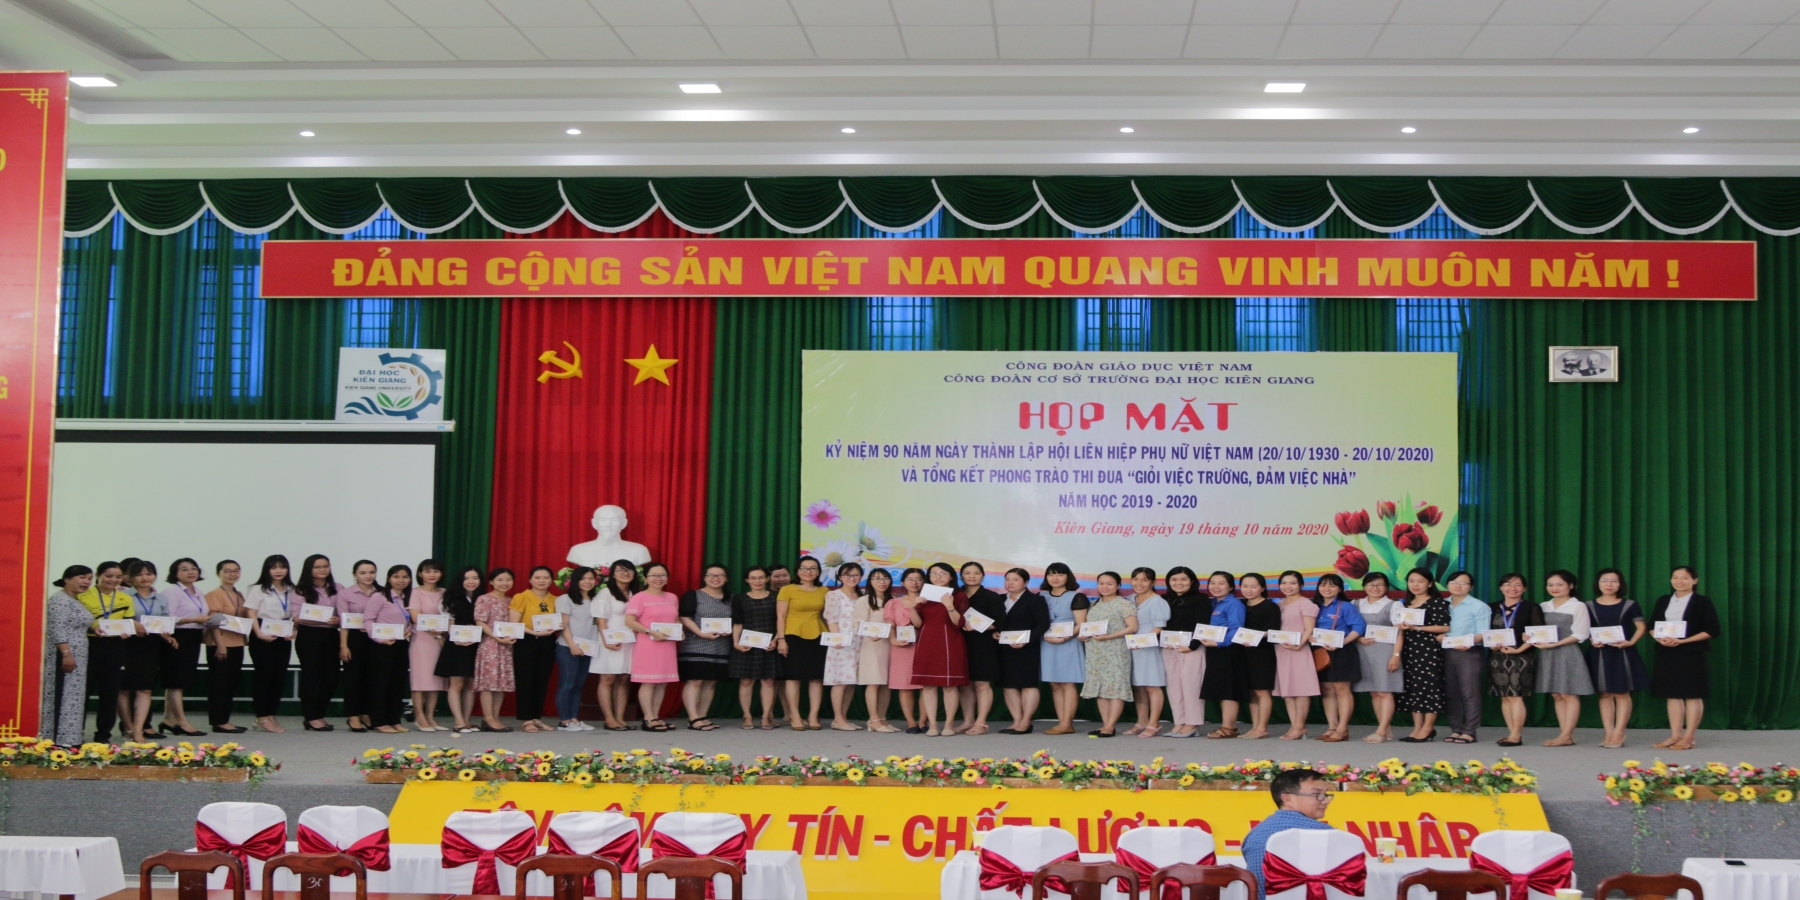 Tổ chức họp mặt kỷ niệm 90 năm ngày thành lập Hội Liên hiệp Phụ nữ Việt Nam (20/10/1930 - 20/10/2020) và tổng kết phong trào thi đua “Giỏi việc trường, đảm việc nhà” năm học 2019-2020